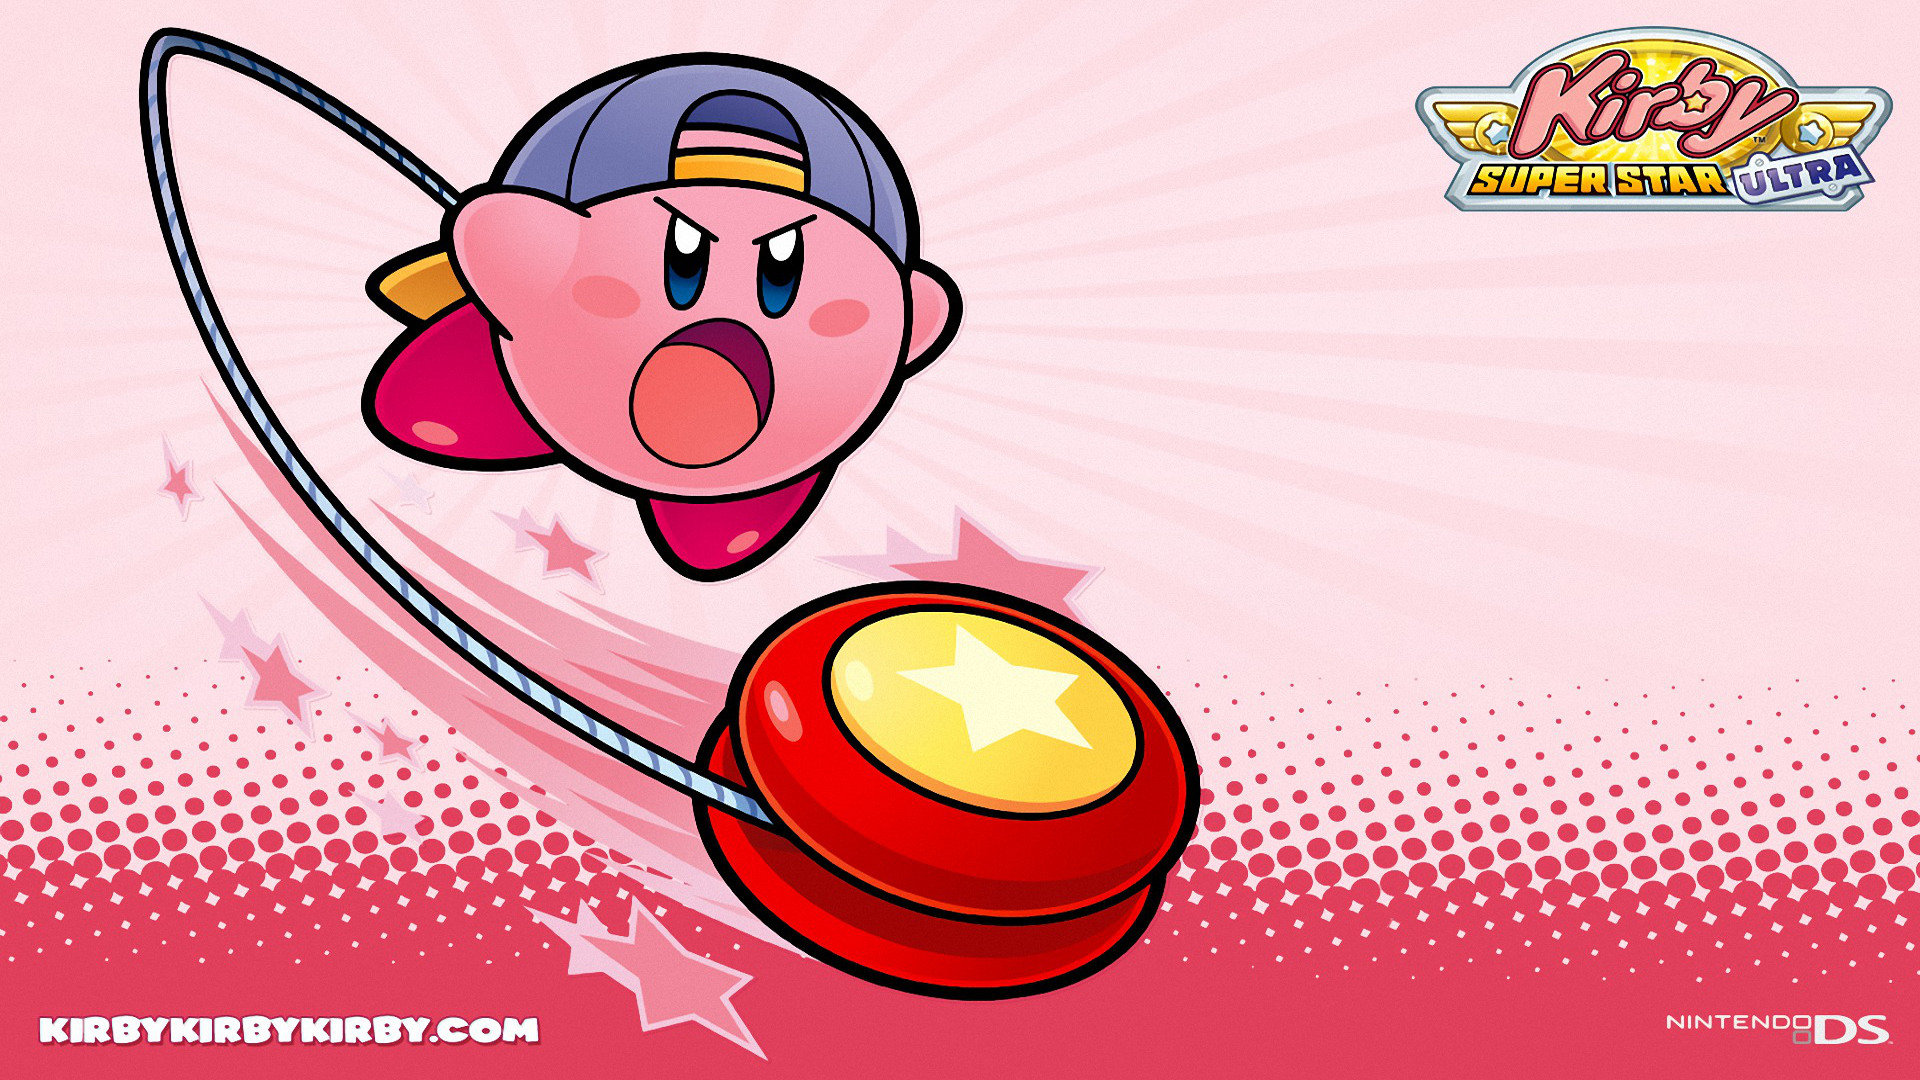 Why I Love: 'Kirby Super Star Ultra